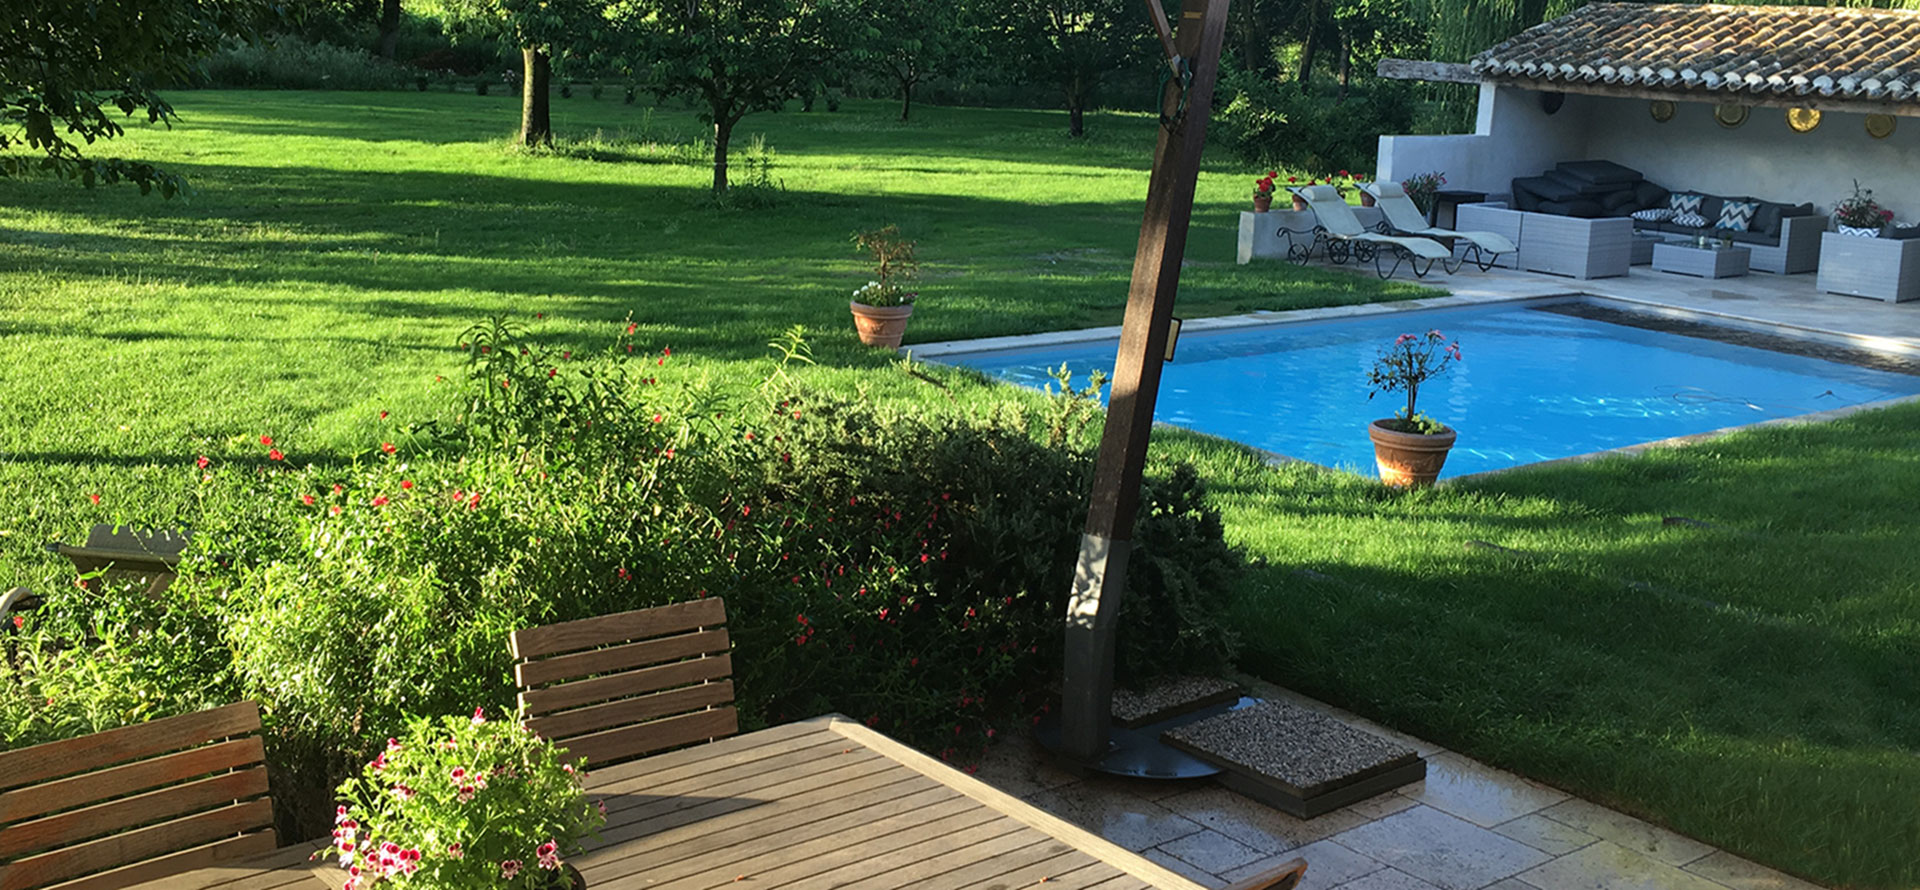 El jardín con la piscina privada y climatizada de las casas de rurales del Castillo de la Vernède